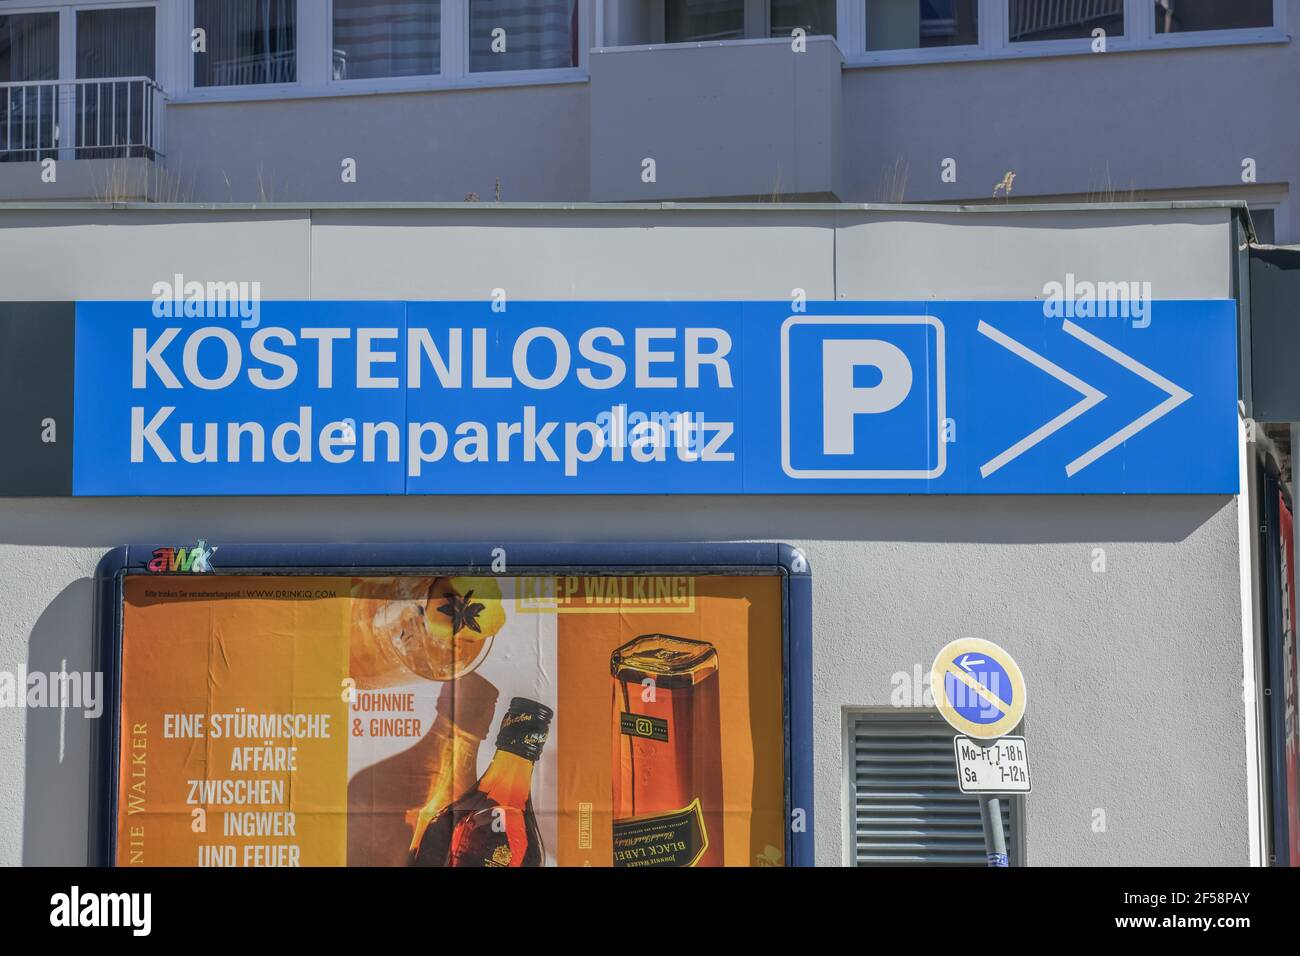 Kostenloser Kundenparkplatz, Witzlebenstraße, Charlottenburg, Berlin, Deutschland Stock Photo